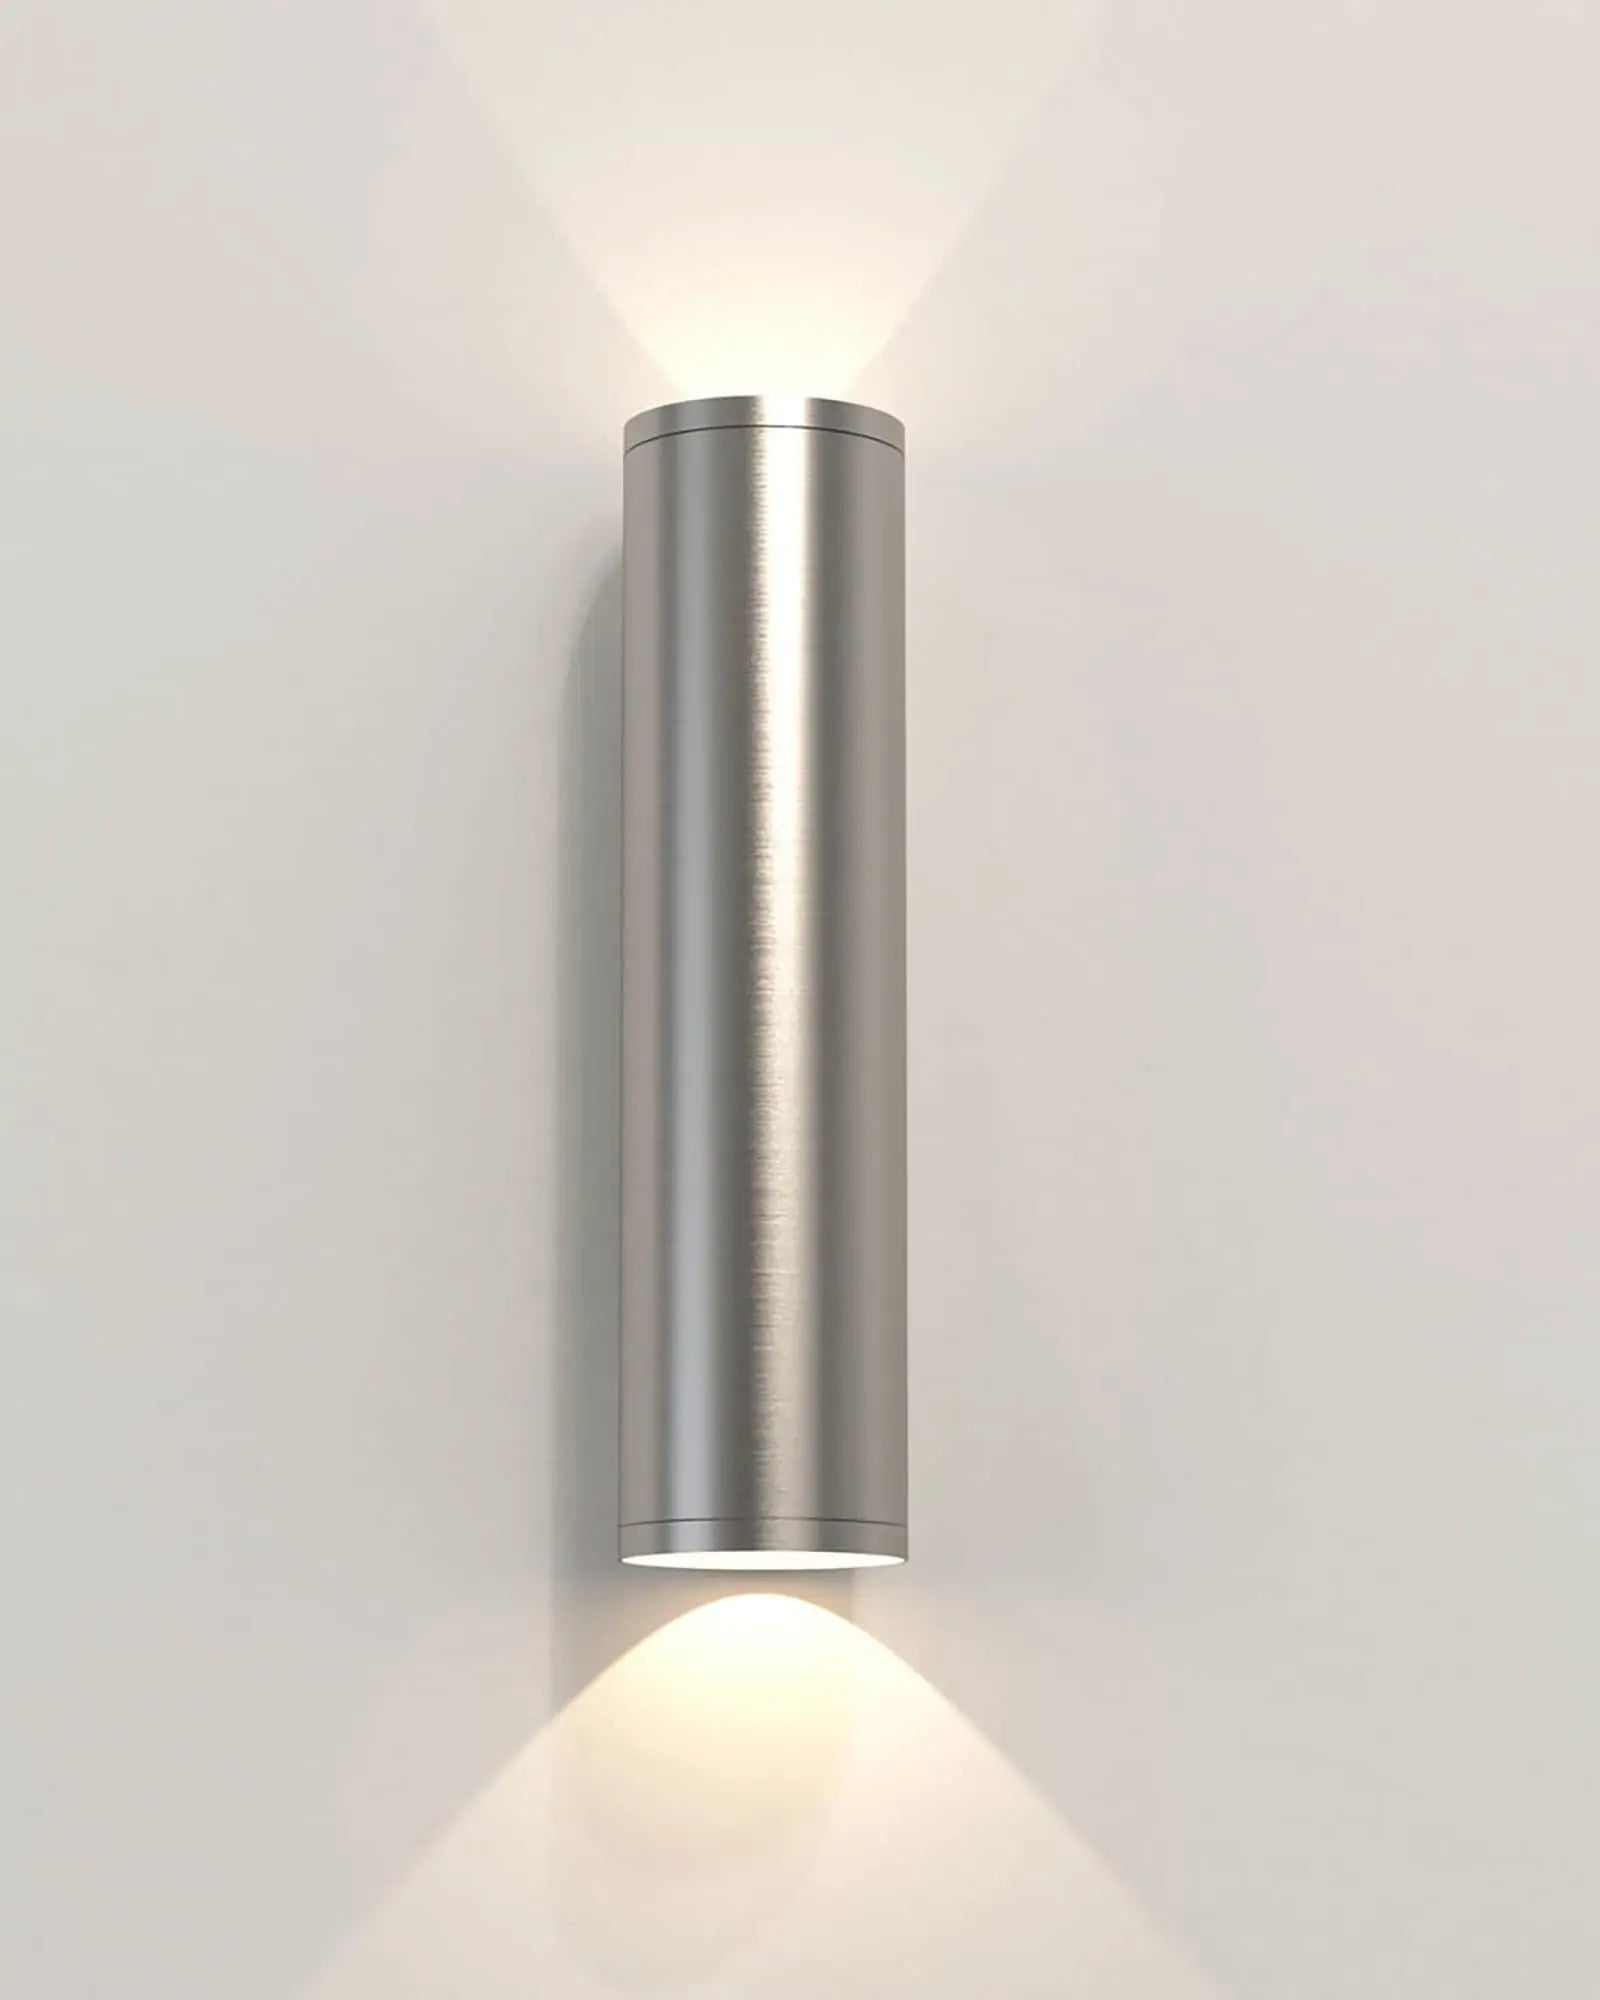 Aba minimalistic cylinder outdoor wall light nickel medium